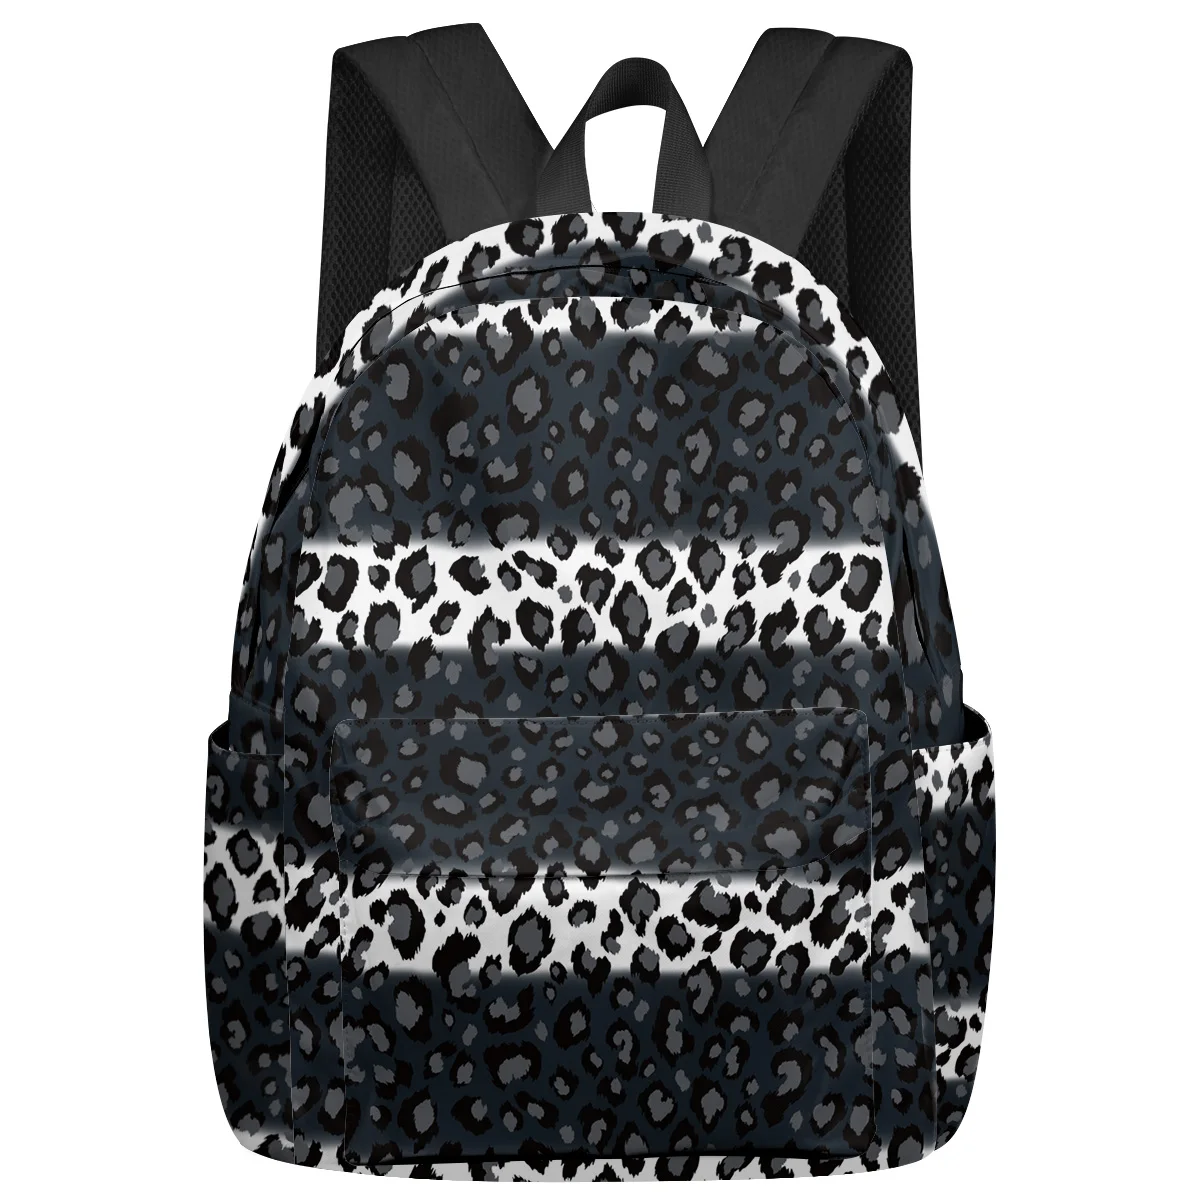 Леопардовый принт Черно-белые полосатые Рюкзаки Подростки Студенческие Школьные сумки Рюкзак для ноутбука Мужчины Женщины Женщины Путешествия Mochila